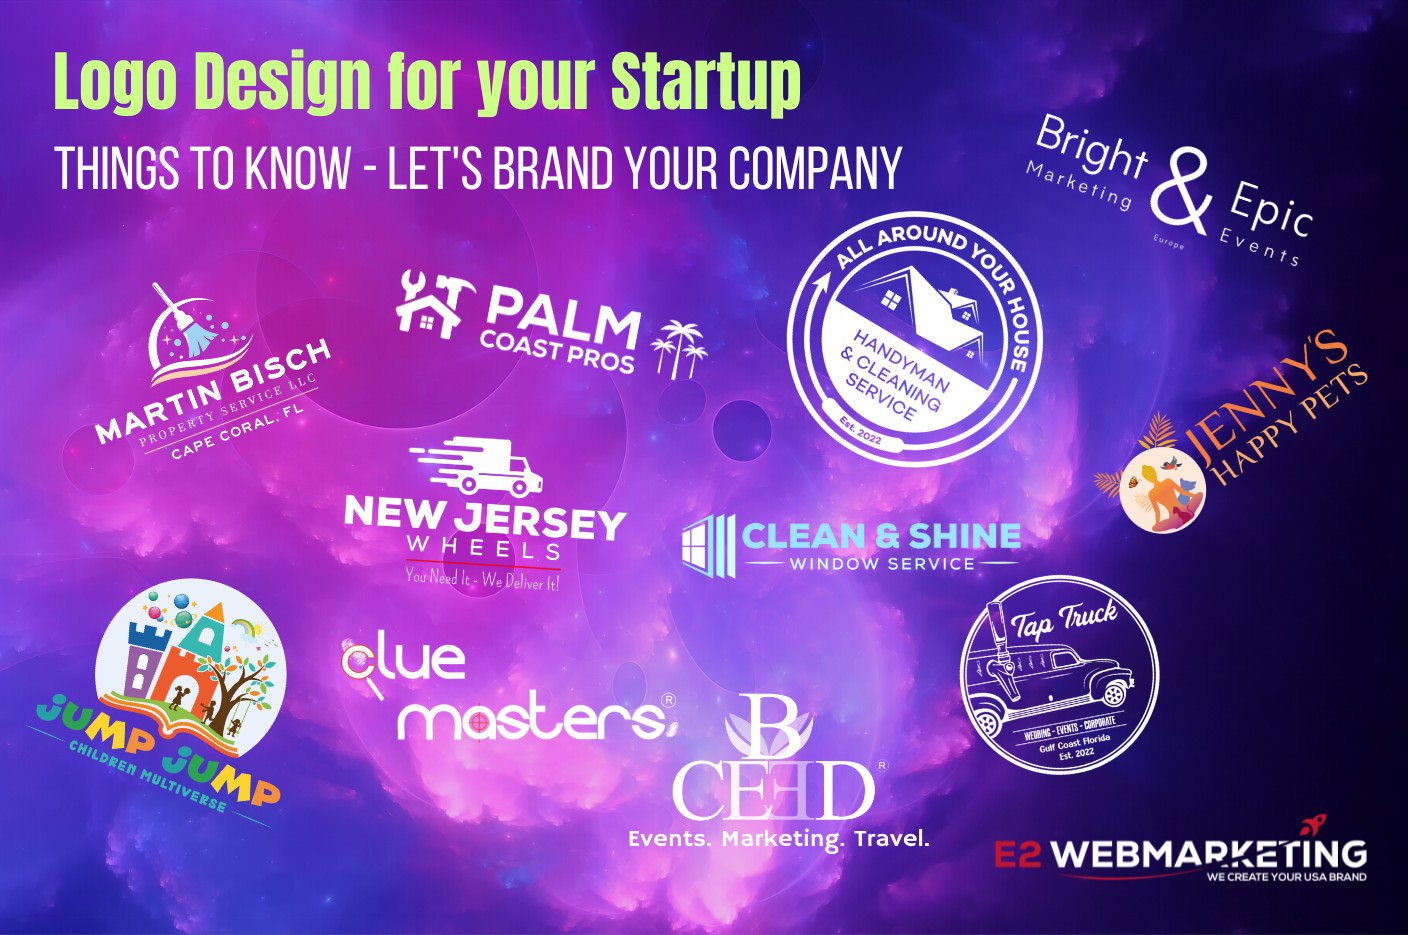 Logodesign für Startups - worauf sollten Sie achten? Hilfreiche Tipps für Startup-Unternehmer von mir als Marketingexperte - e2webmarketing Logo Design Services